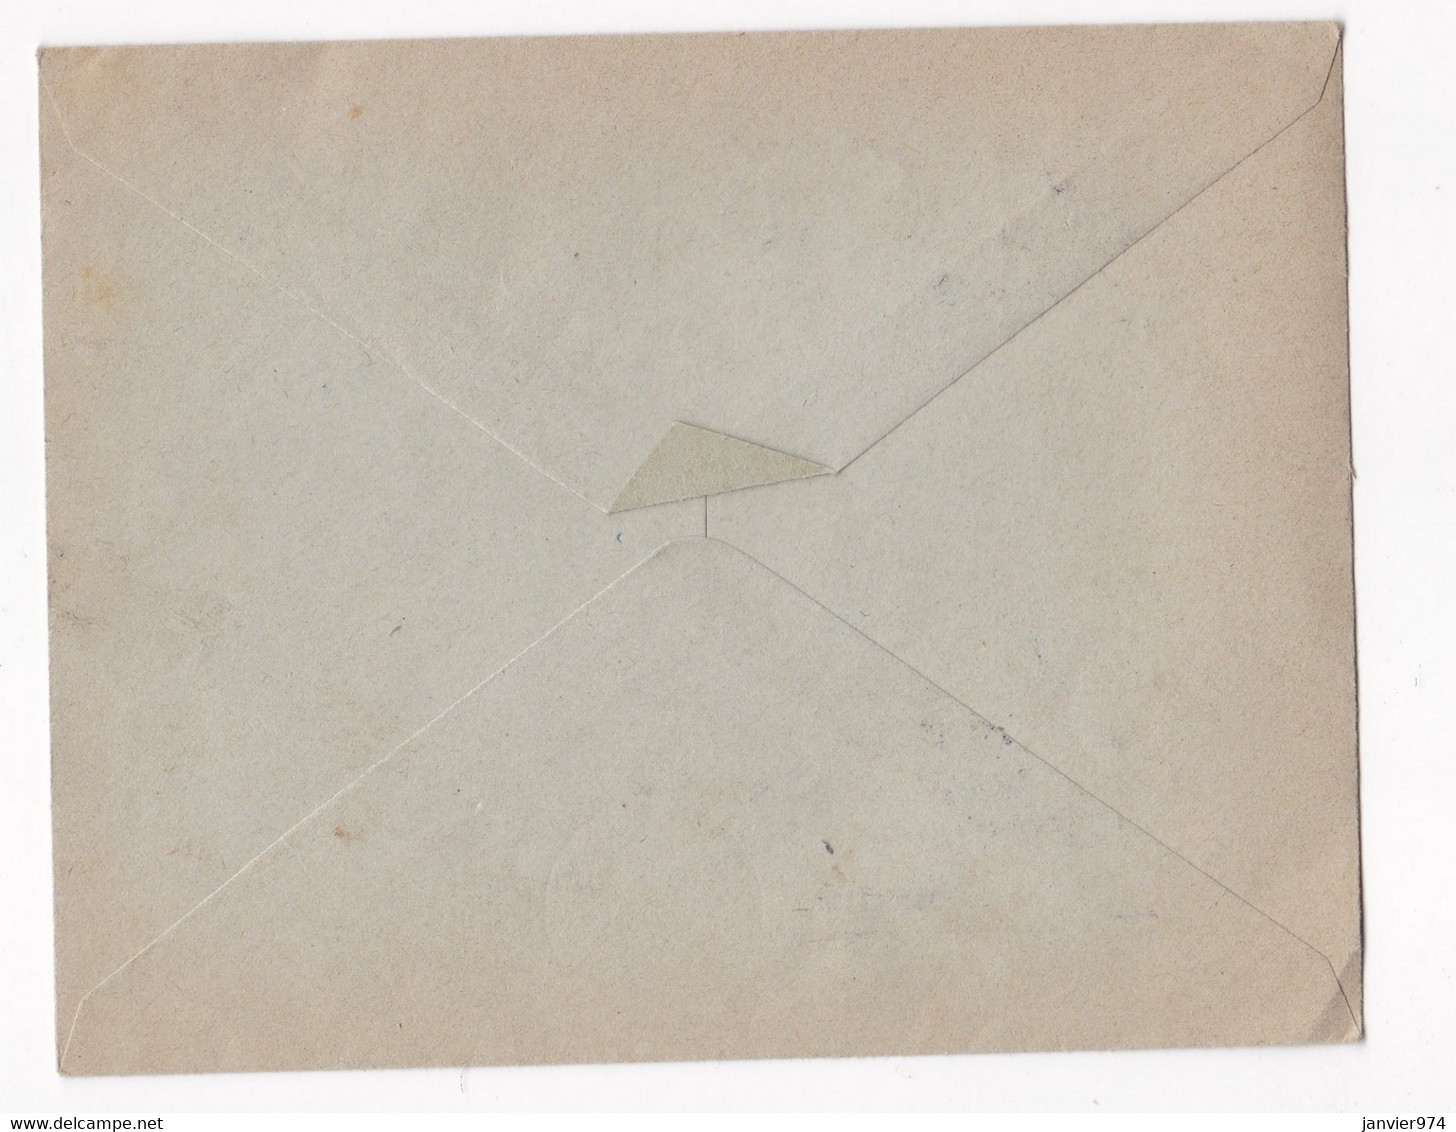 Enveloppe 1953, 1er Liaison Aérienne Postale De Nuit Montpellier Paris . Tampon Nimes. - 1927-1959 Briefe & Dokumente